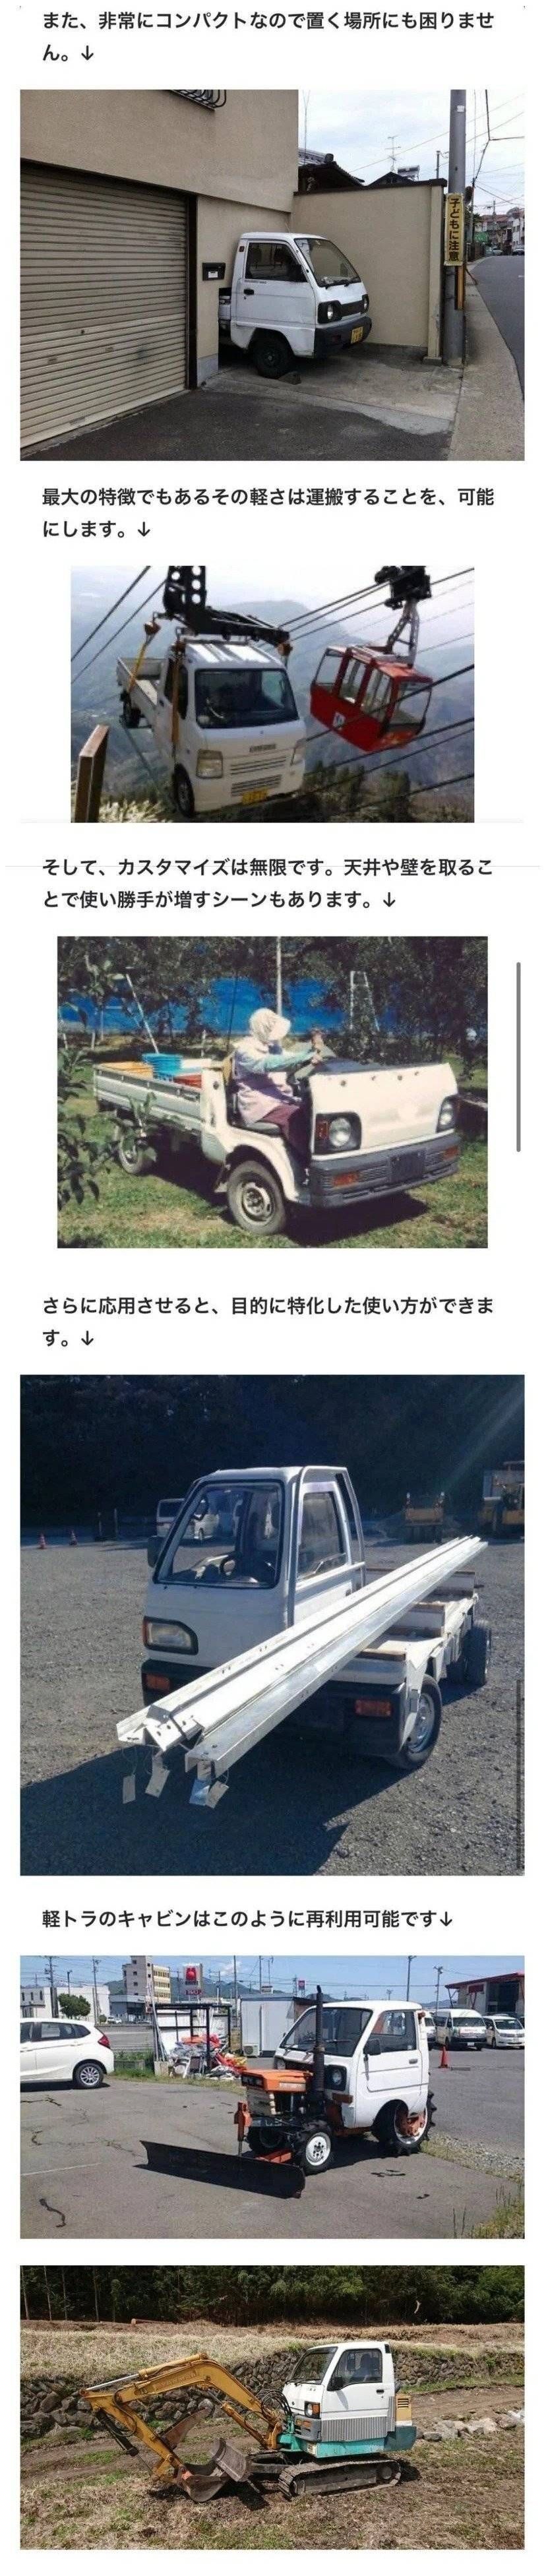 일본의 트럭 튜닝.